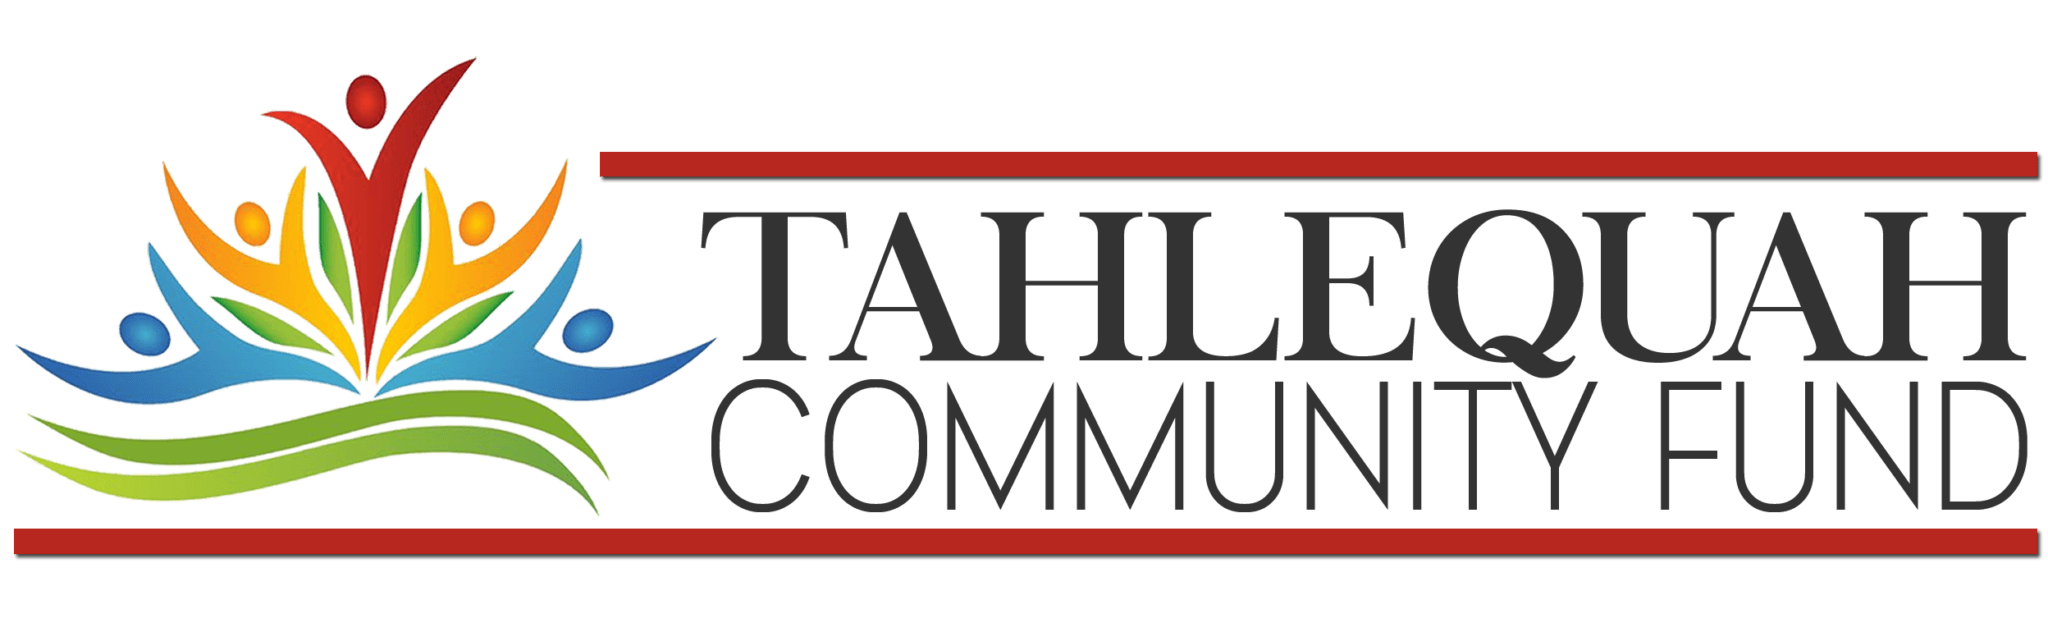 Tahlequah Community Fund